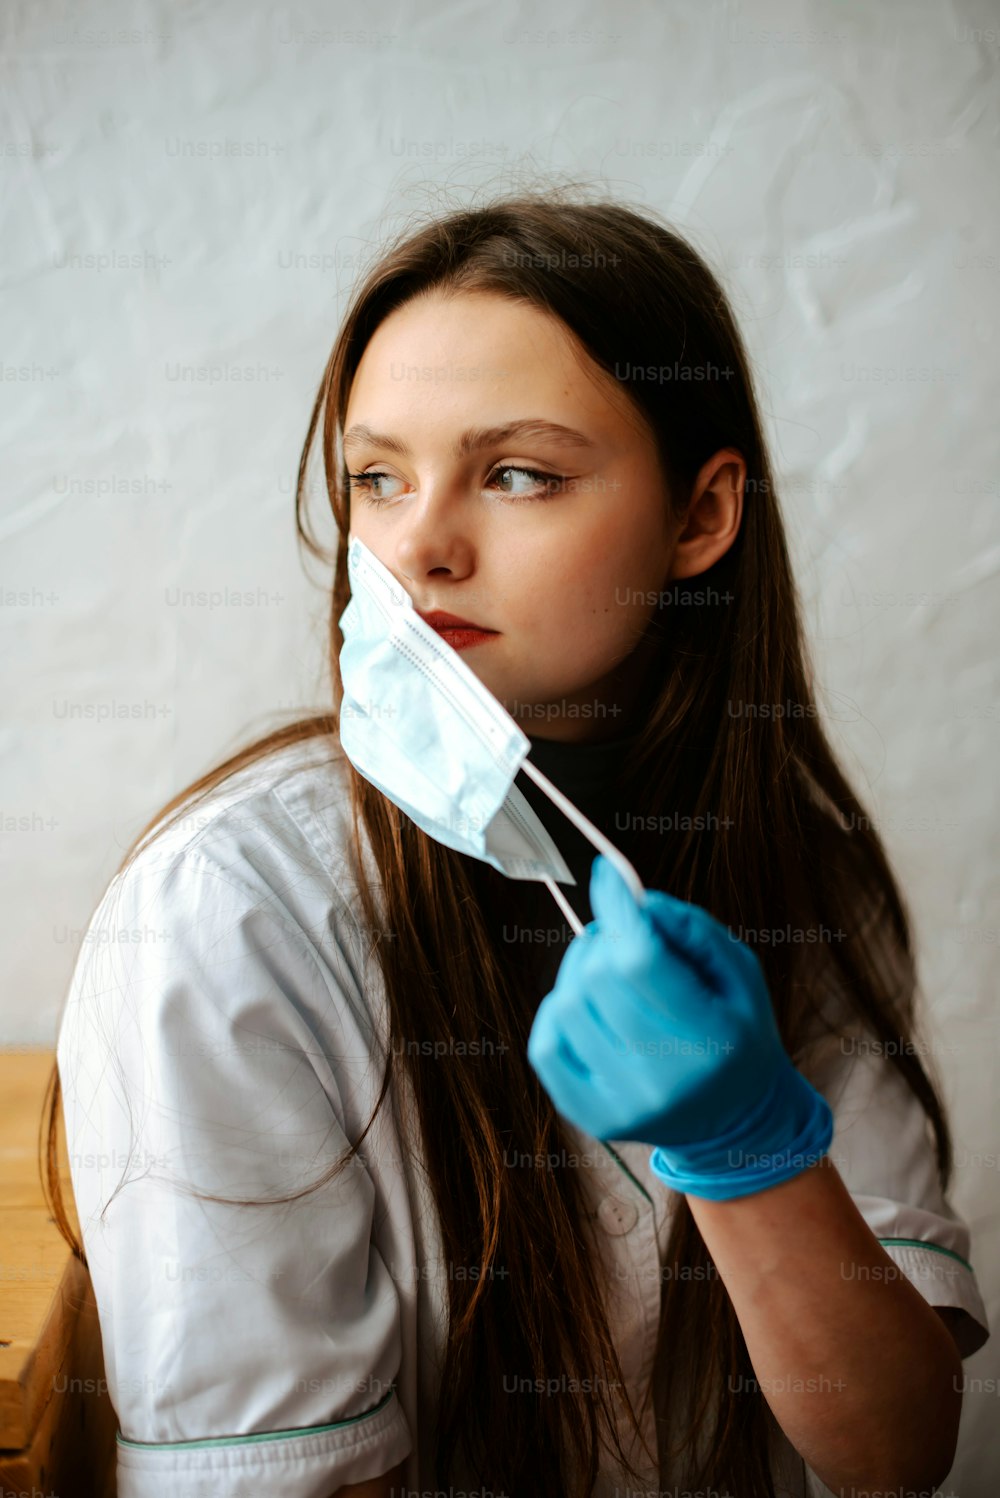 Eine Frau in weißem Hemd und blauen Handschuhen hält sich eine OP-Maske über den Mund